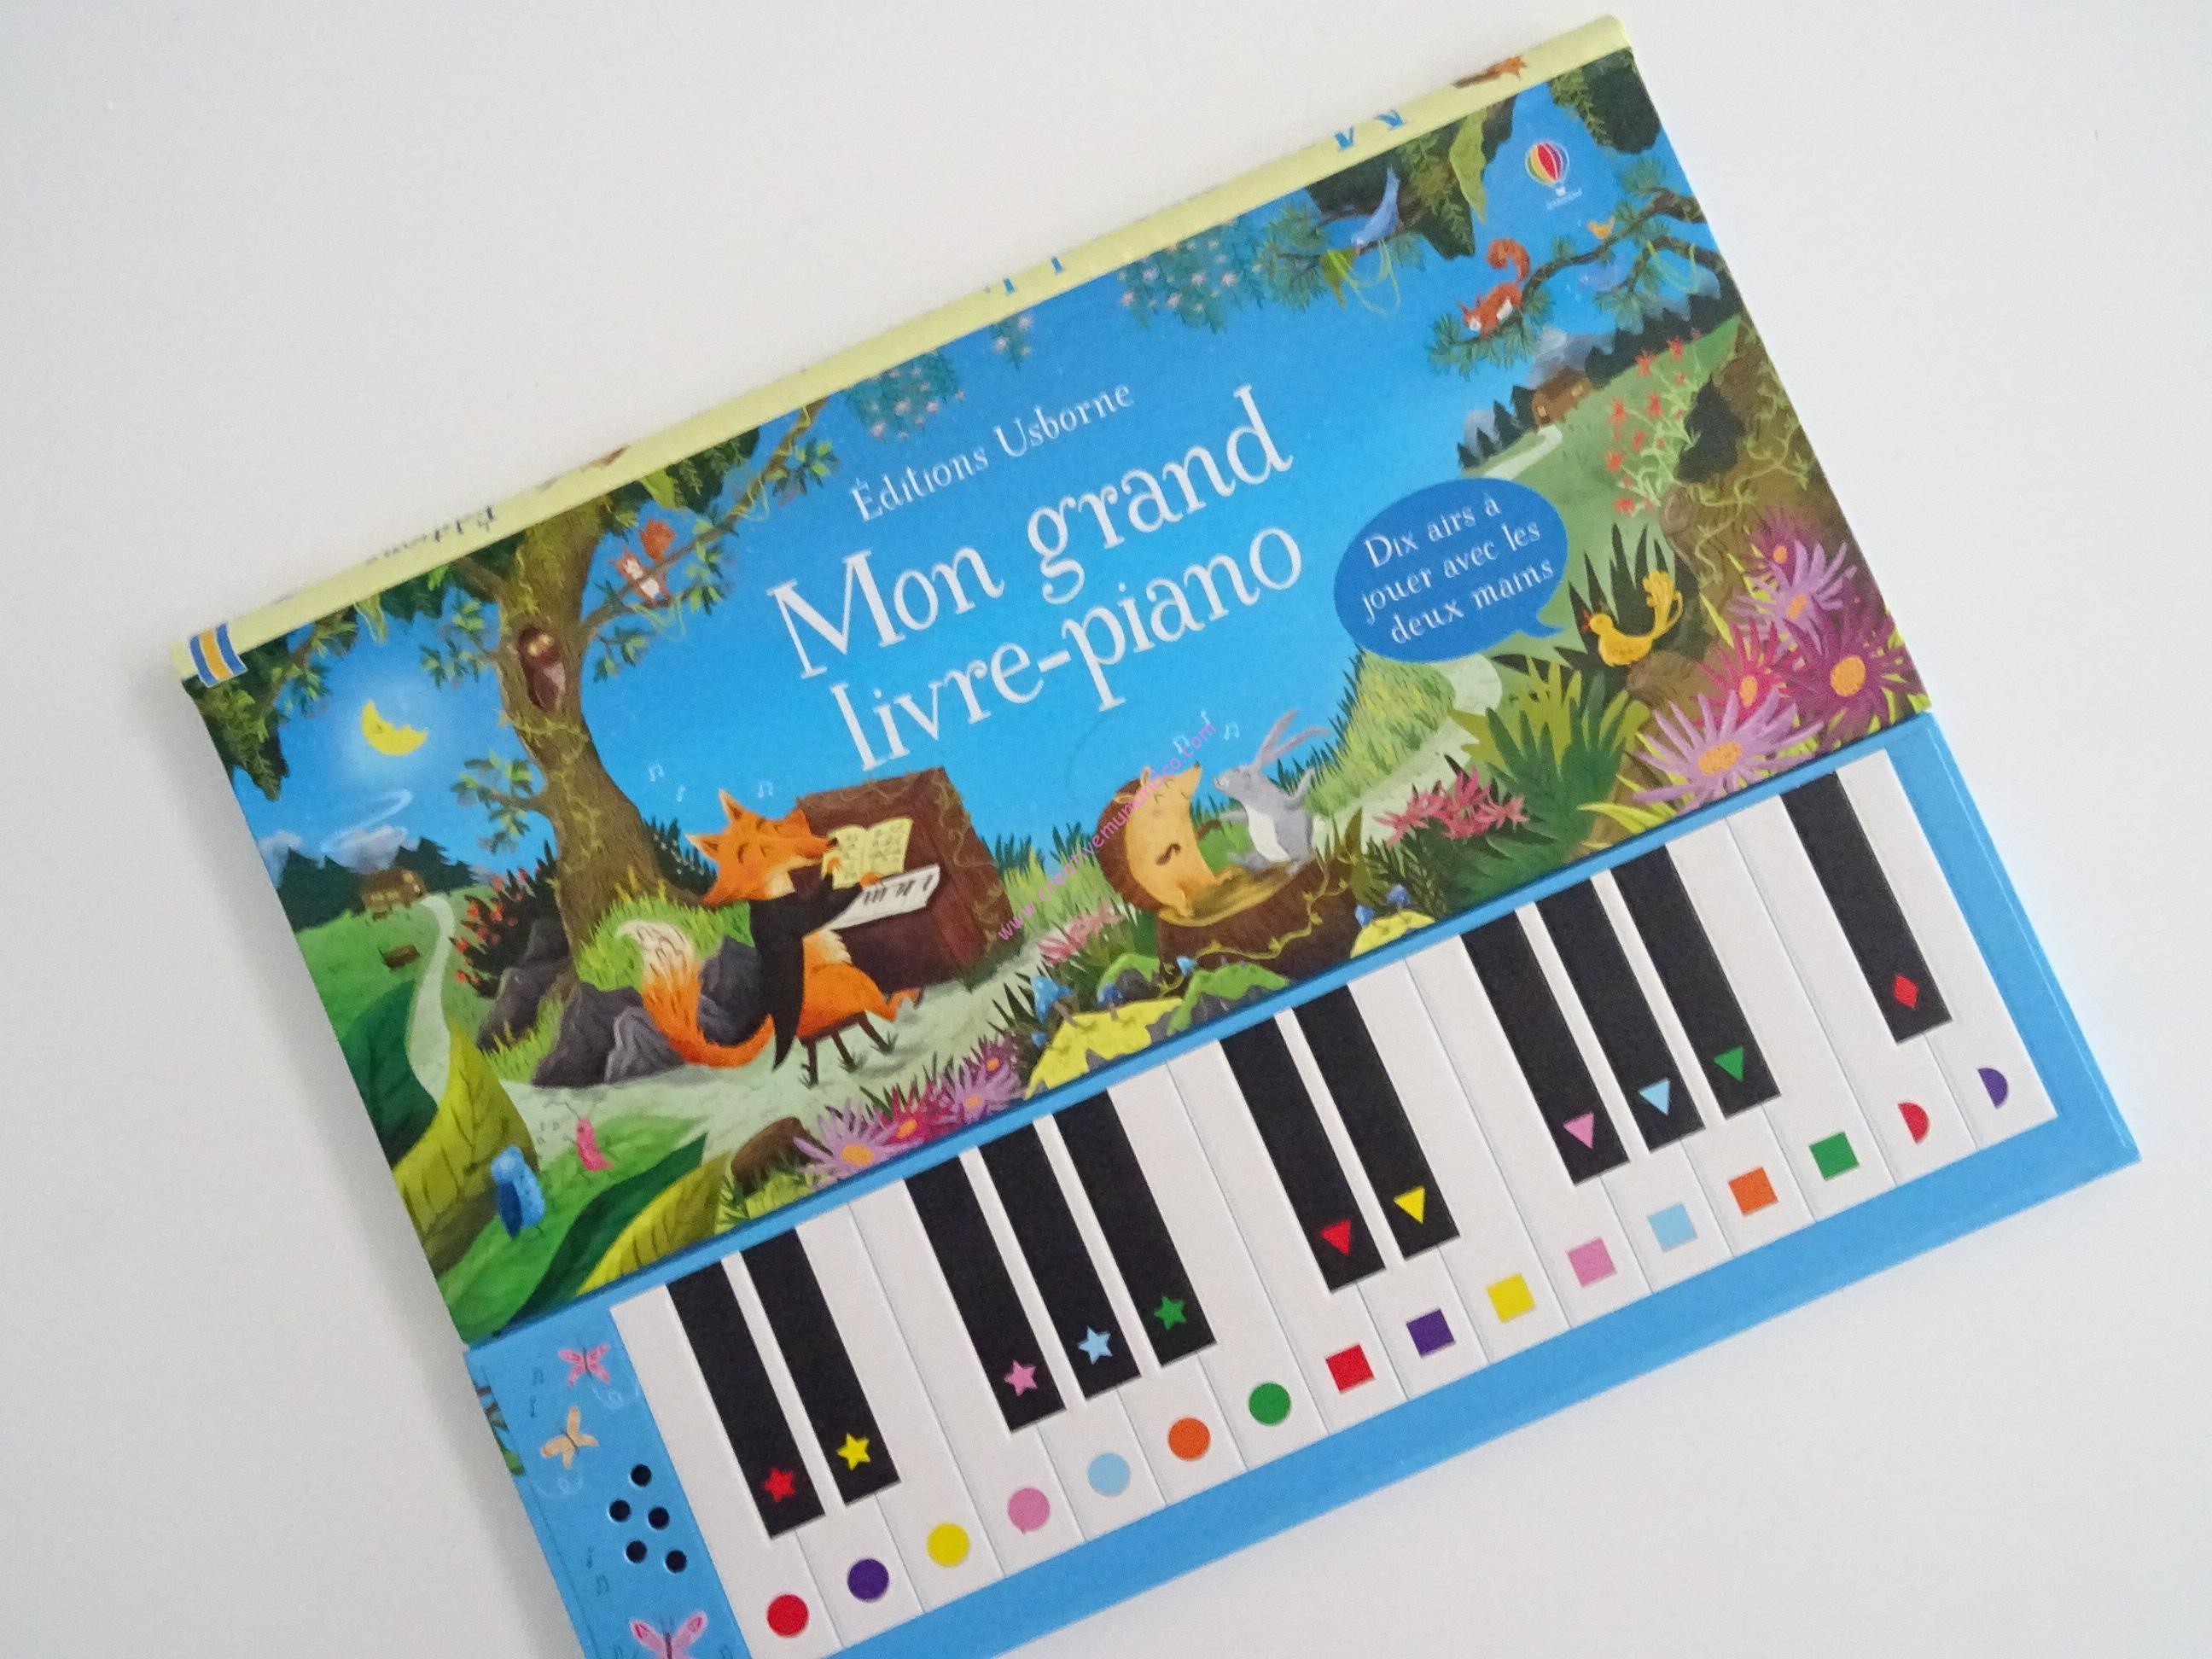 Mon premier livre-piano Usborne - Les Perles de Maman